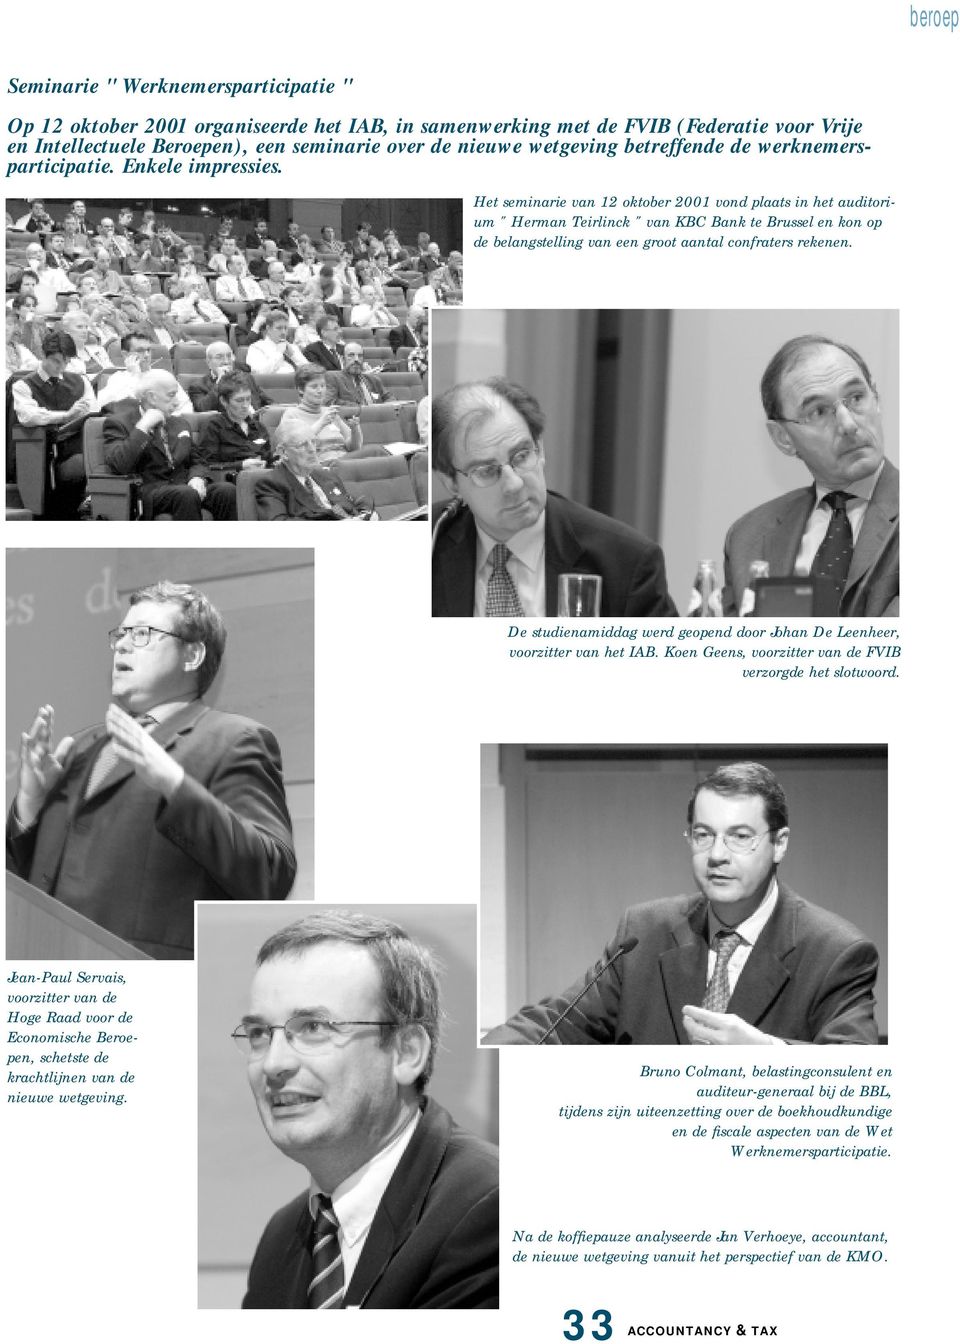 Het seminarie van 12 oktober 2001 vond plaats in het auditorium " Herman Teirlinck " van KBC Bank te Brussel en kon op de belangstelling van een groot aantal confraters rekenen.